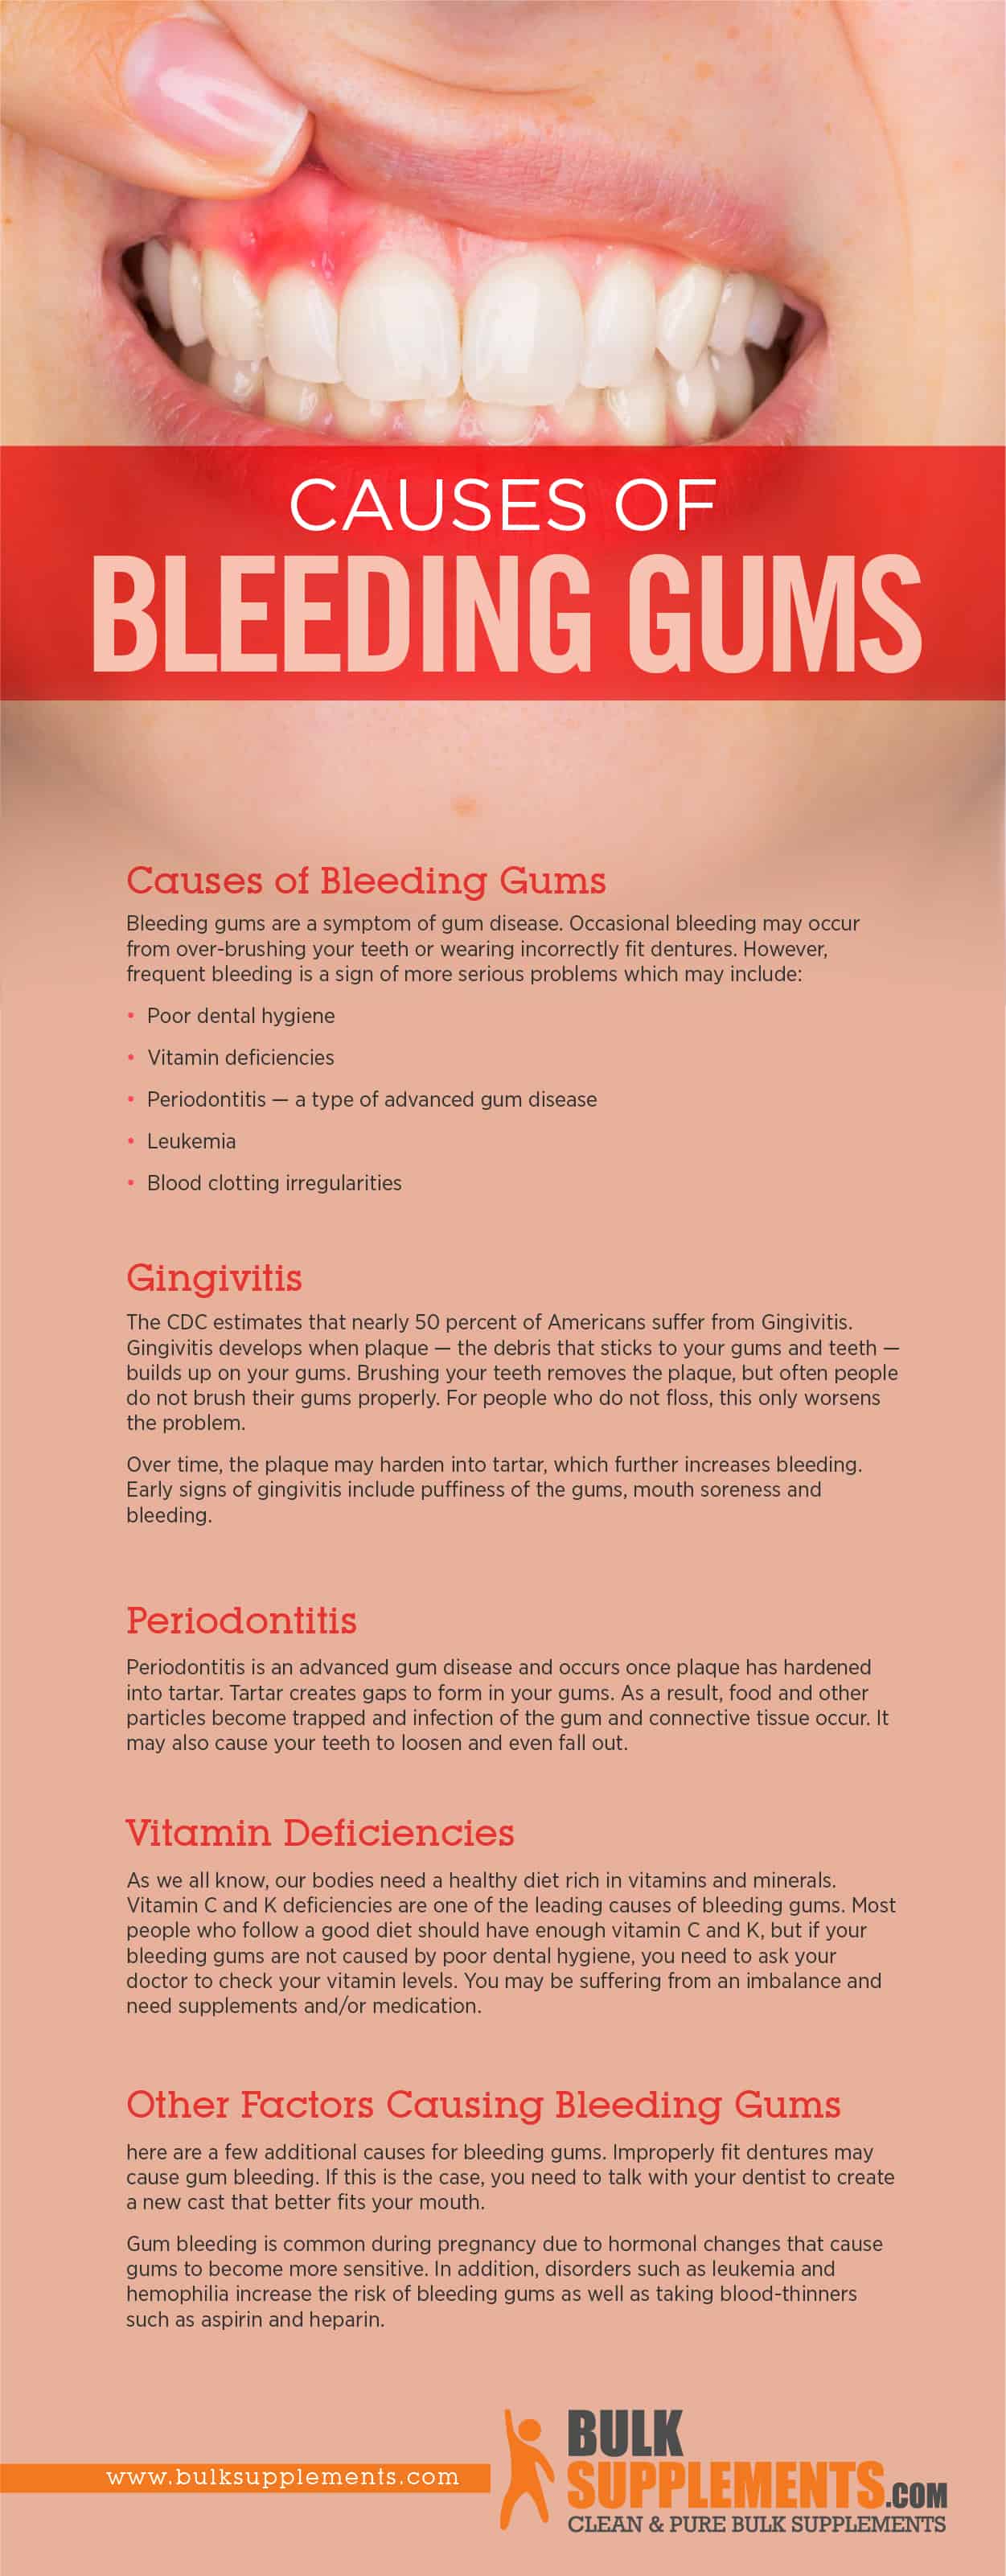 Bleeding Gums Causes